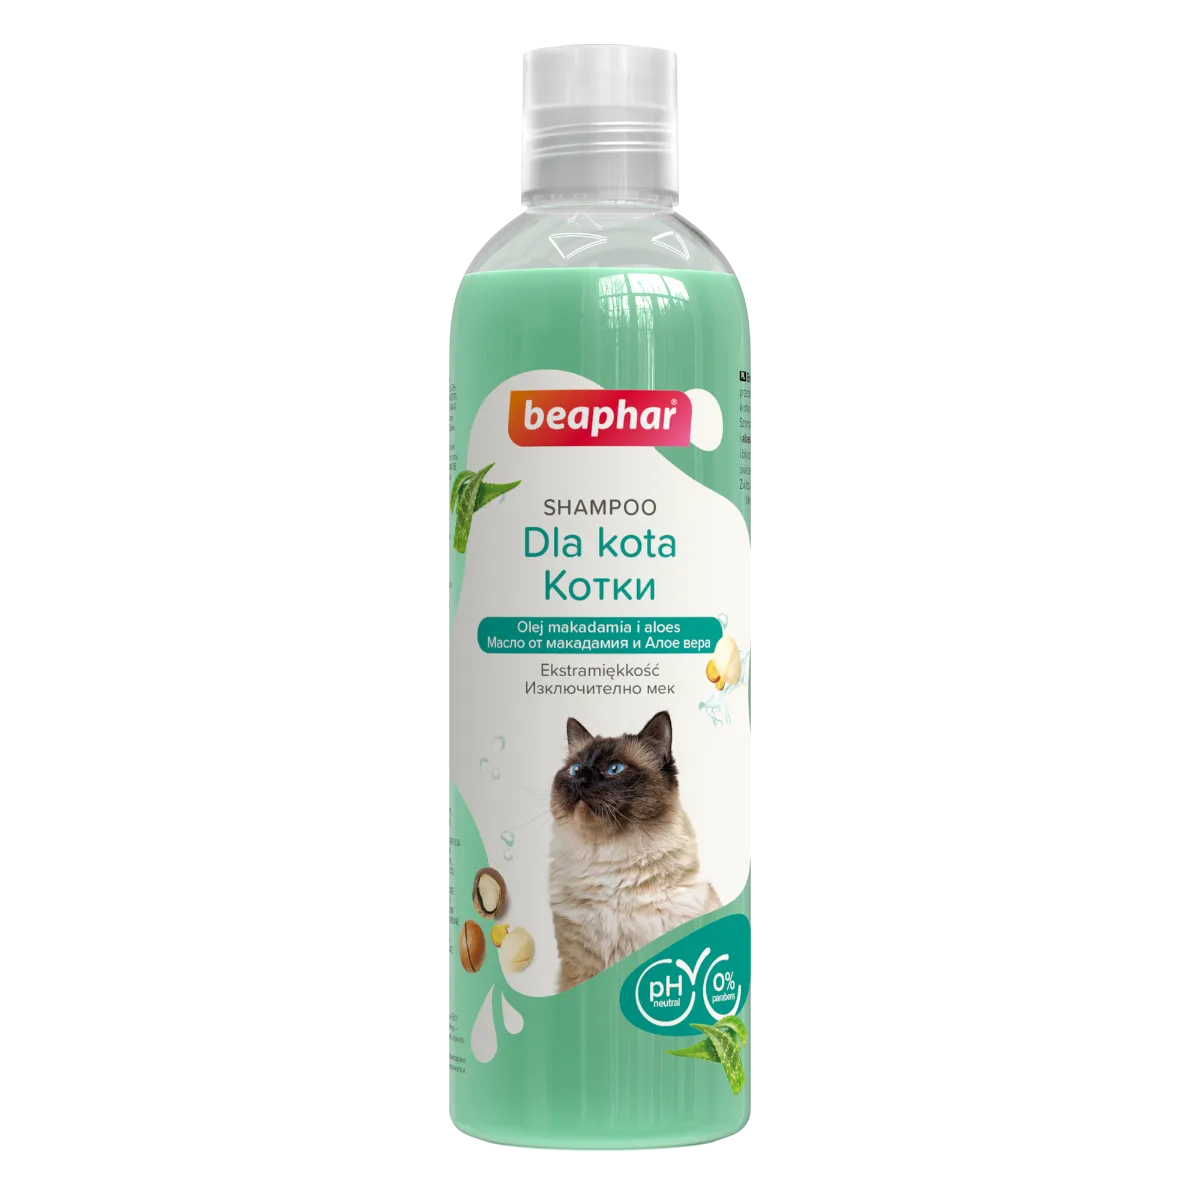 Beaphar Shampoo Cat Szampon dla kotów, 250 ml